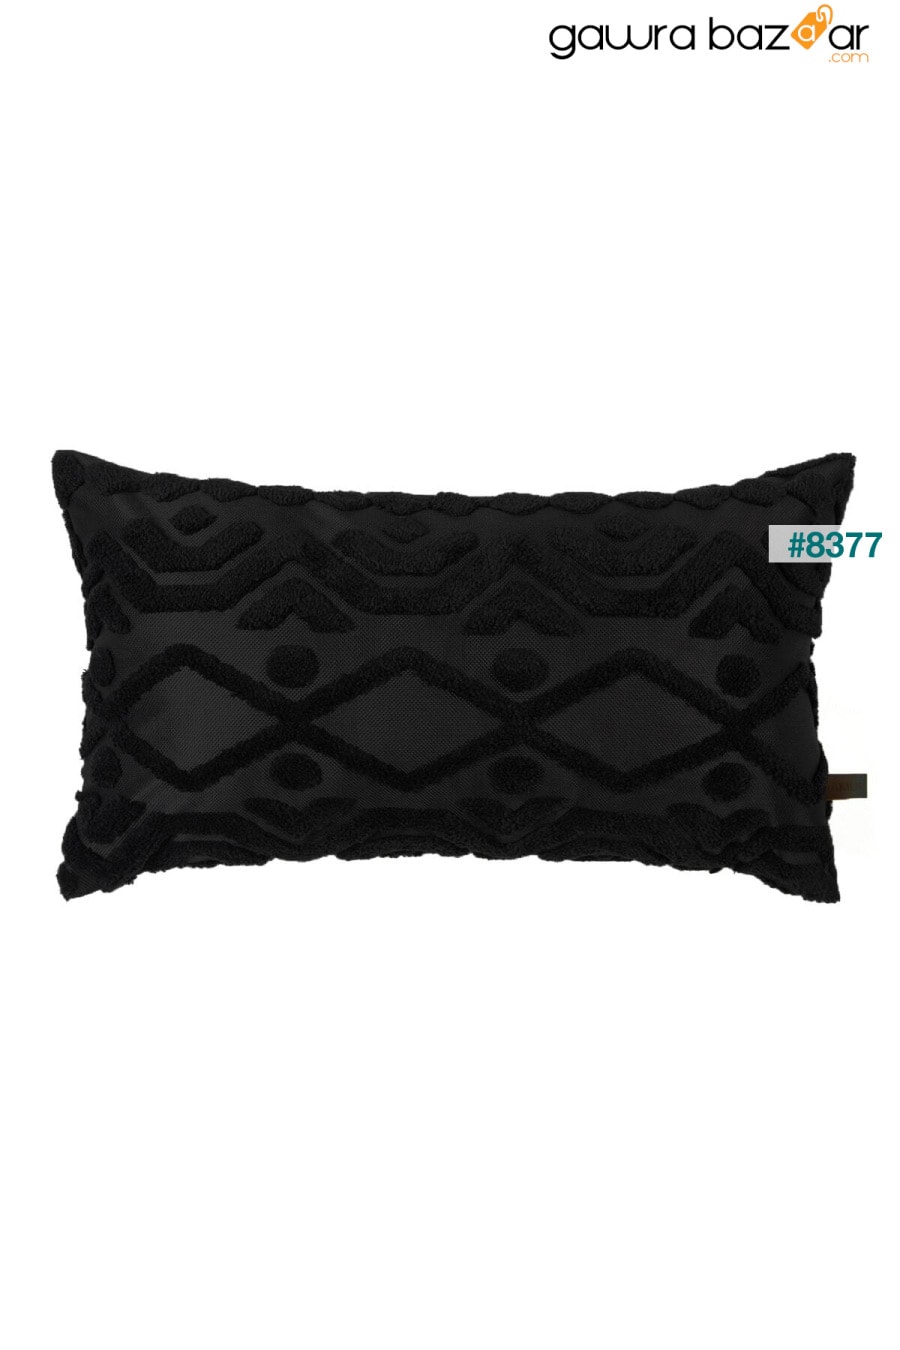 غطاء وسادة مستطيل الشكل بتصميم بوهيمي خاص بنمط مثقوب باللون الأسود Letta HAMUR 2